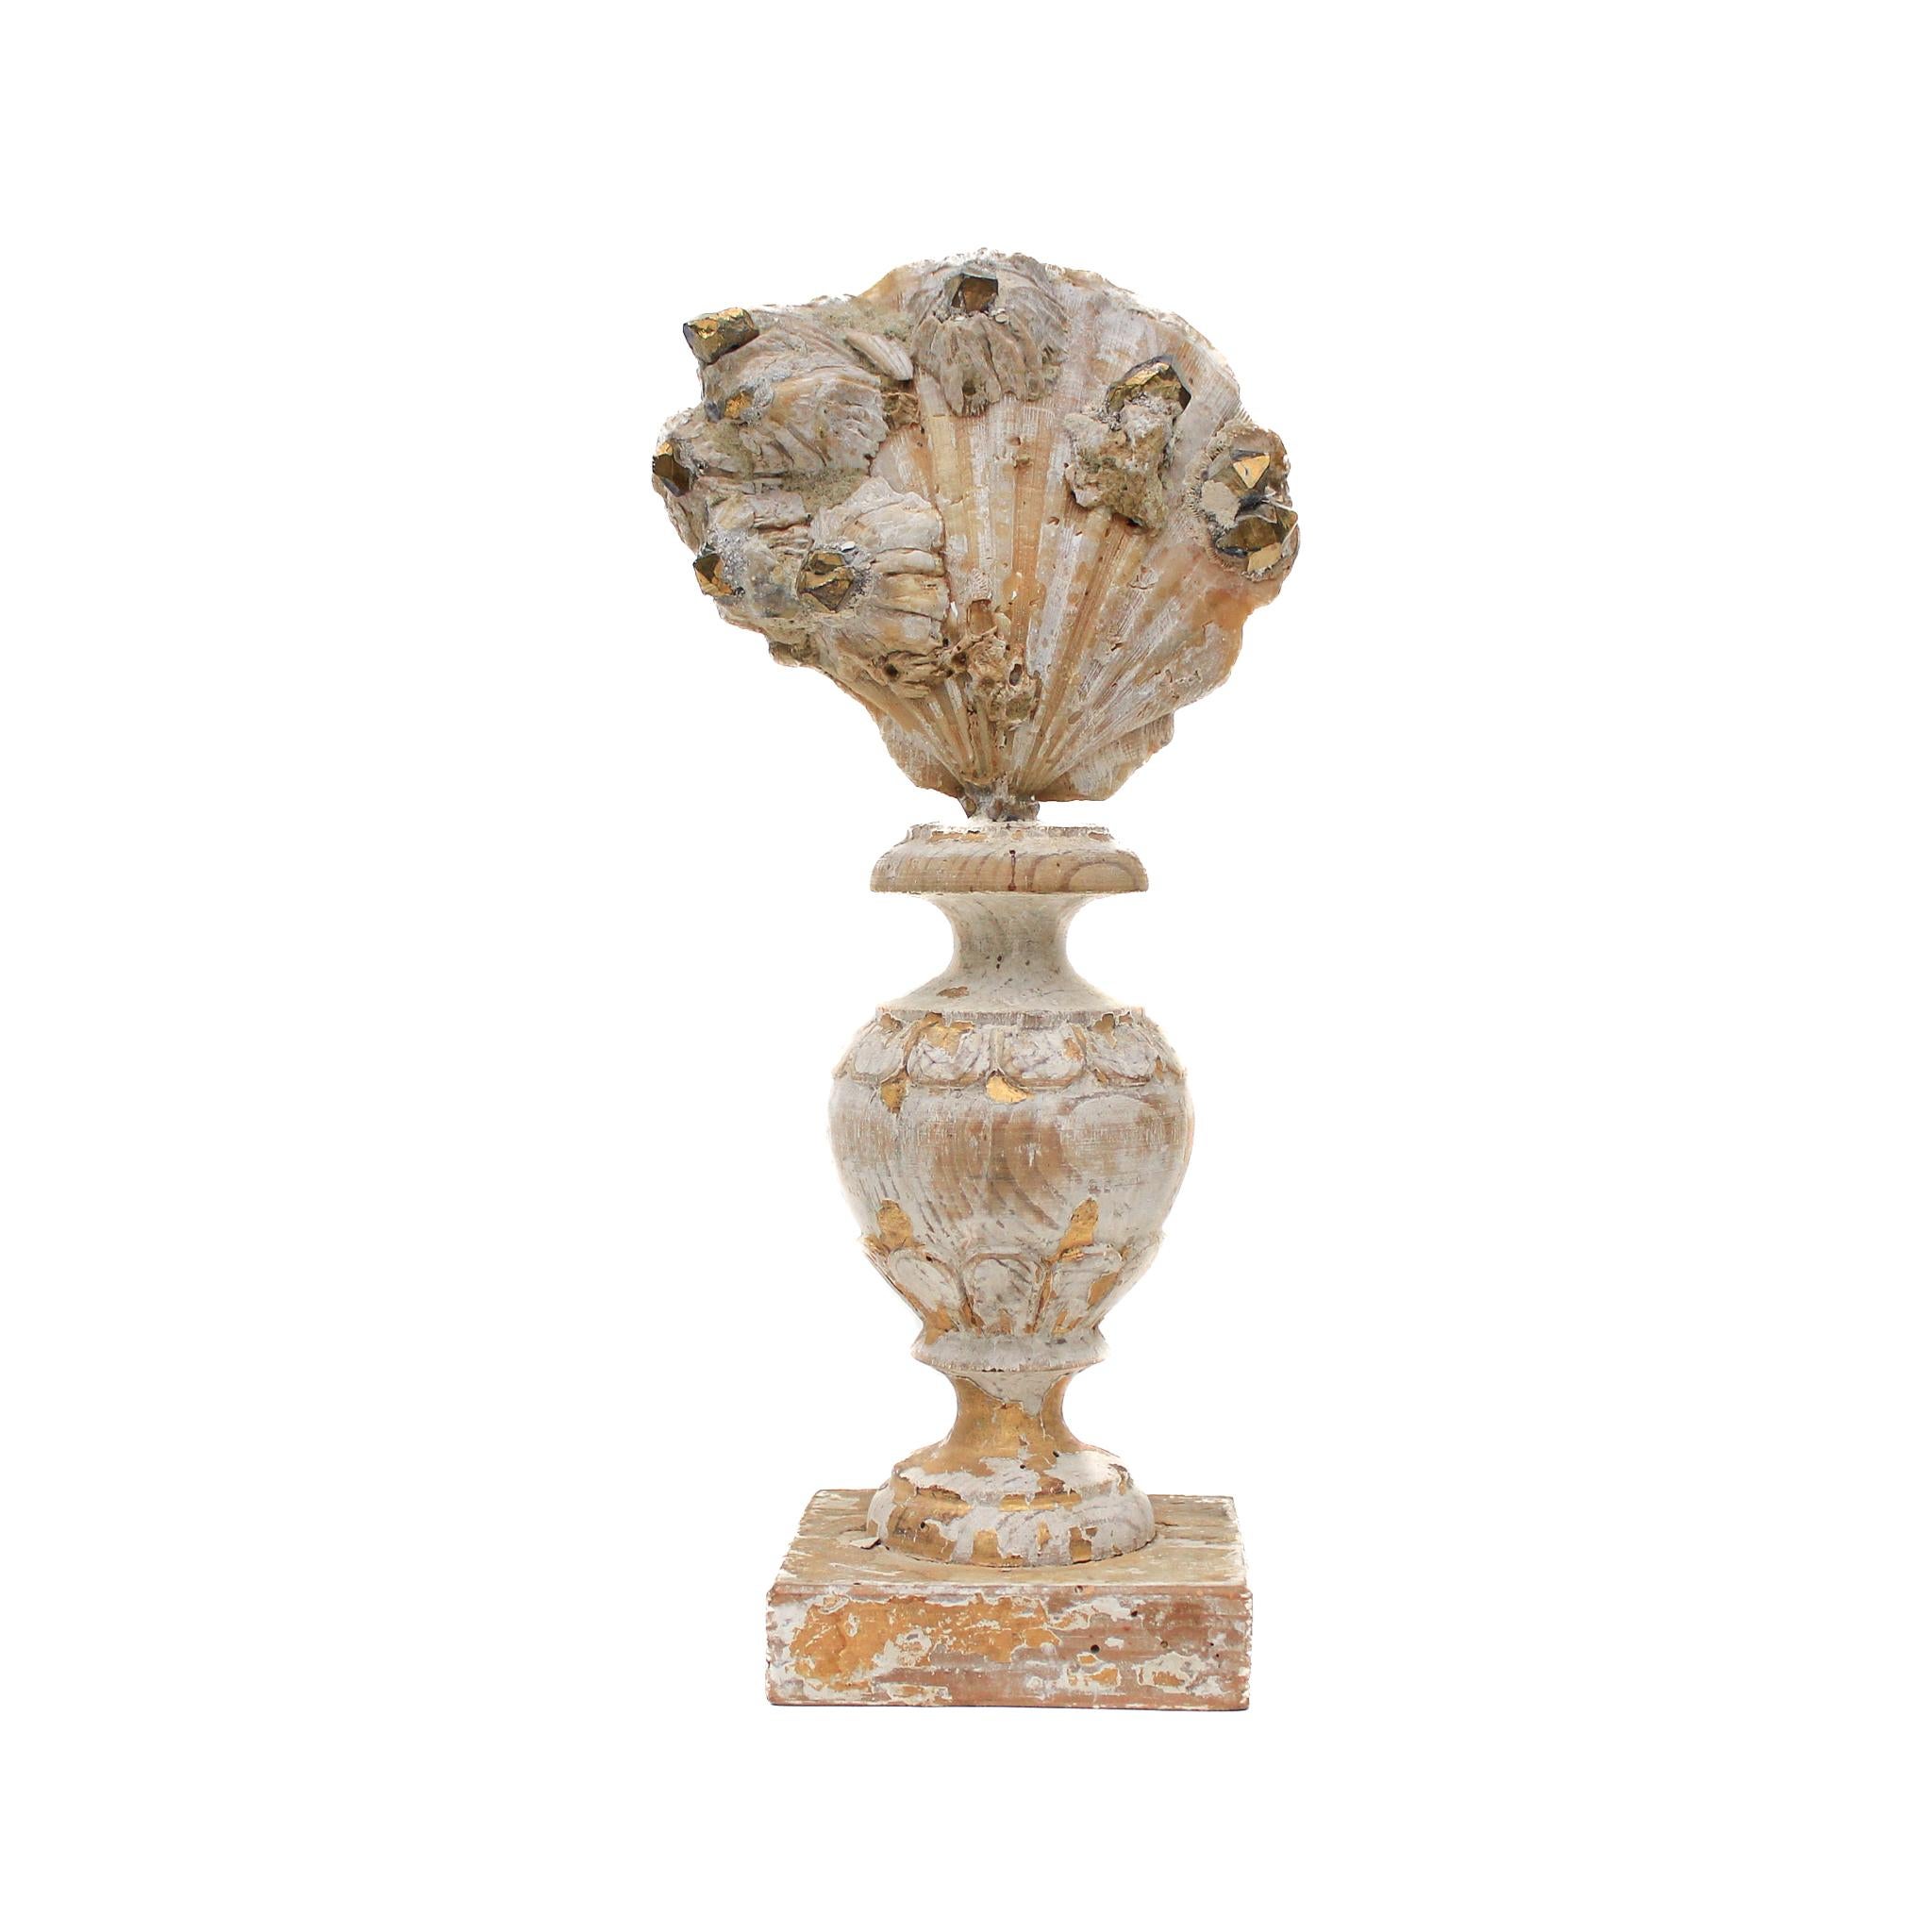 vase italien du XVIIe siècle avec une coquille de chesapecten et des pointes de cristal plaqué or.

Ce fragment provient d'une église de Florence. Il a été trouvé et sauvé de l'inondation historique de la rivière Arno en 1966.

La pièce a été